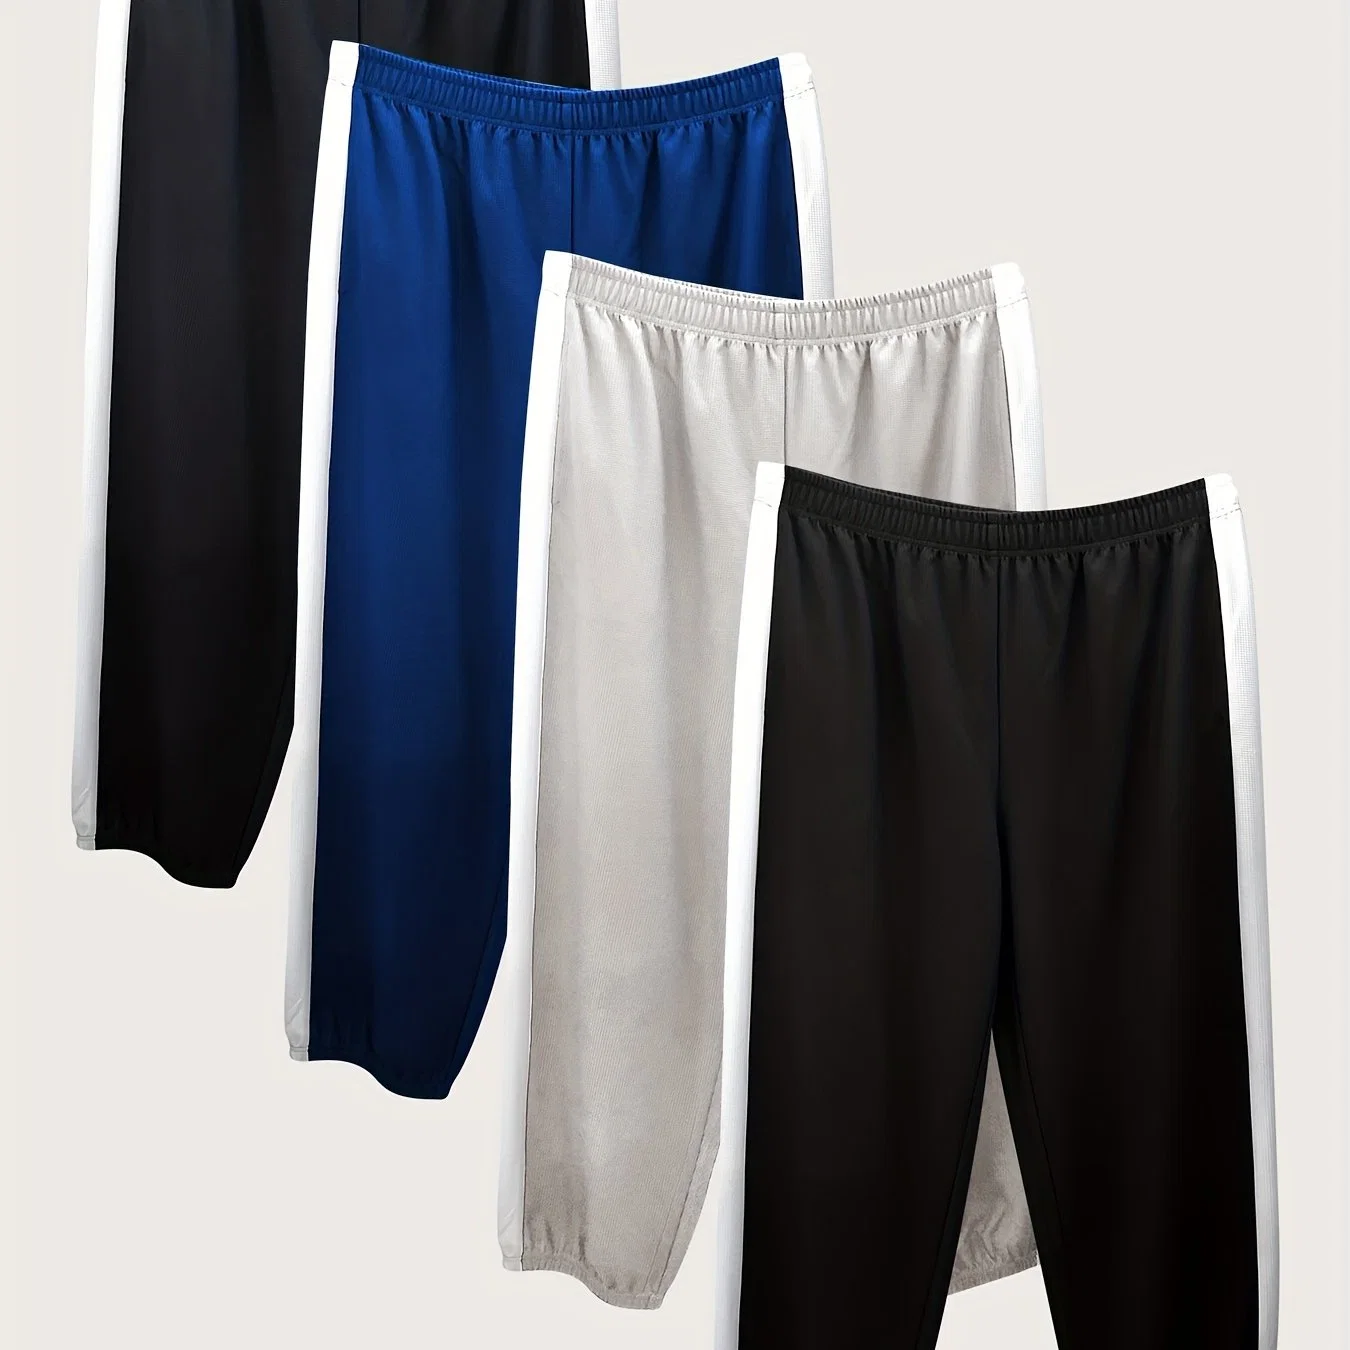 Heißer Verkauf Großhandel/Lieferant Plus Größe Herren 4-PC Waffel Pants Seite Panel Clause Sporthose Sweat Pants Herren Plus Size Hose